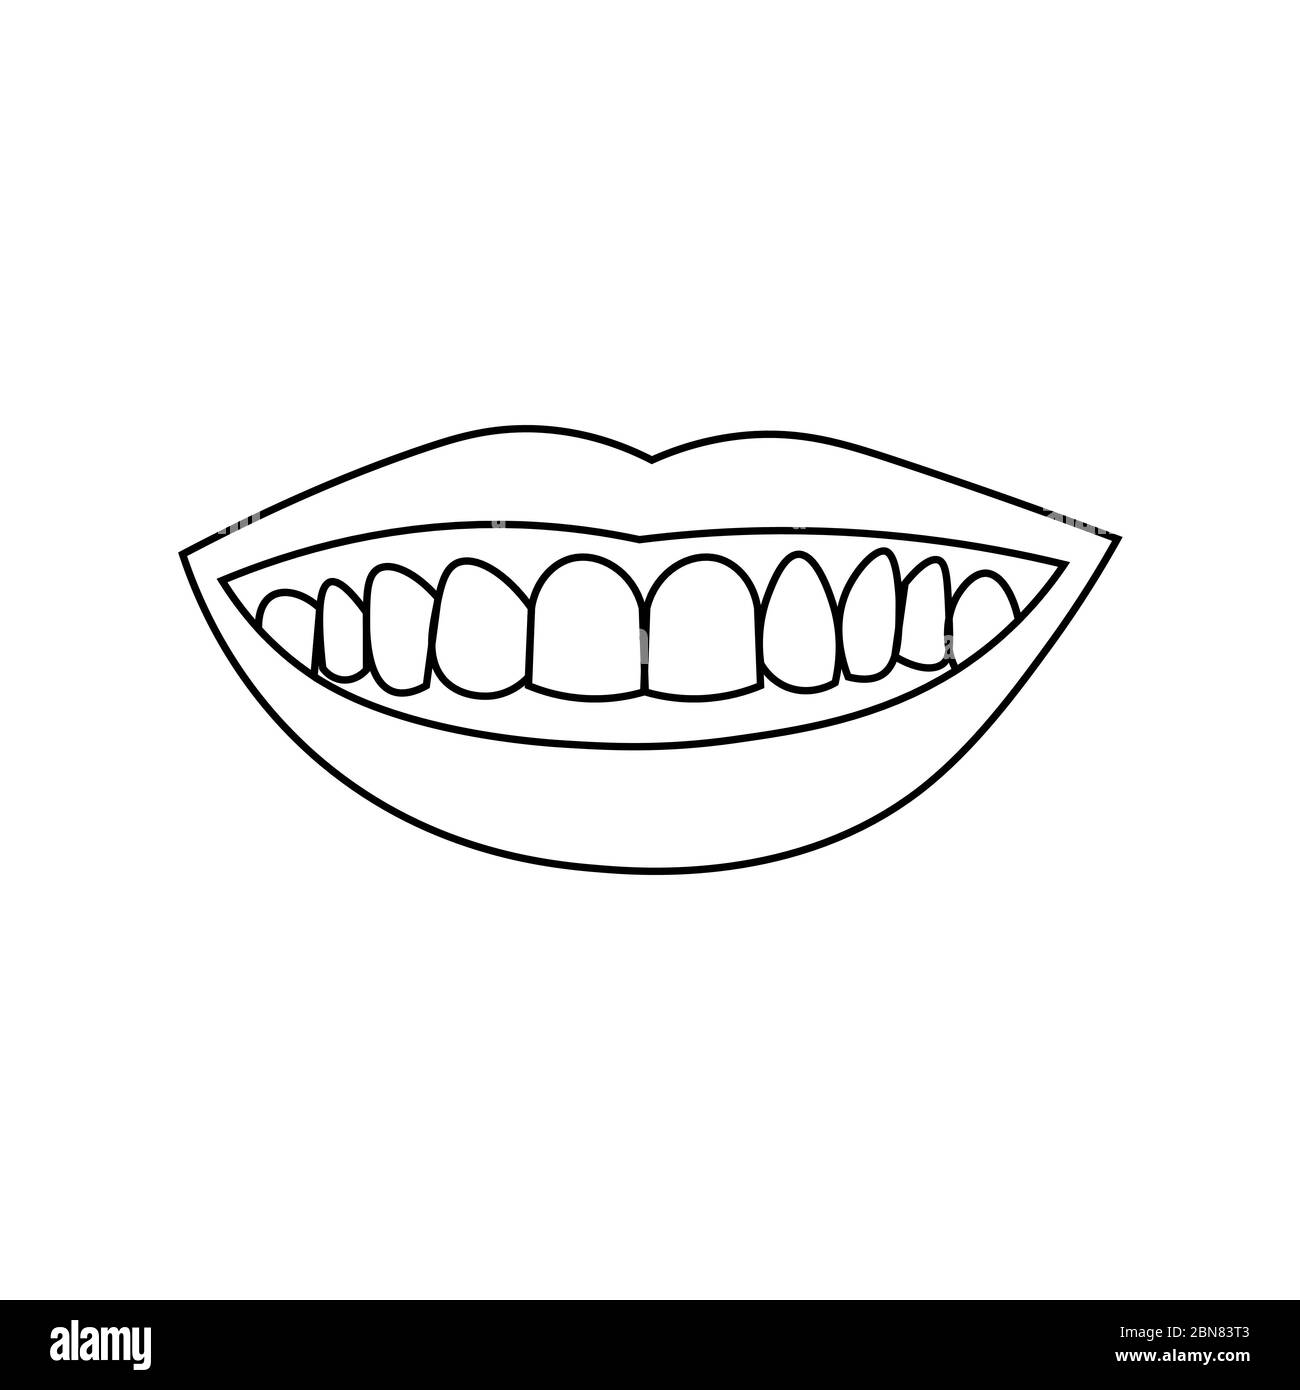 Human tooth sketch Royalty Free Vector Image - VectorStock